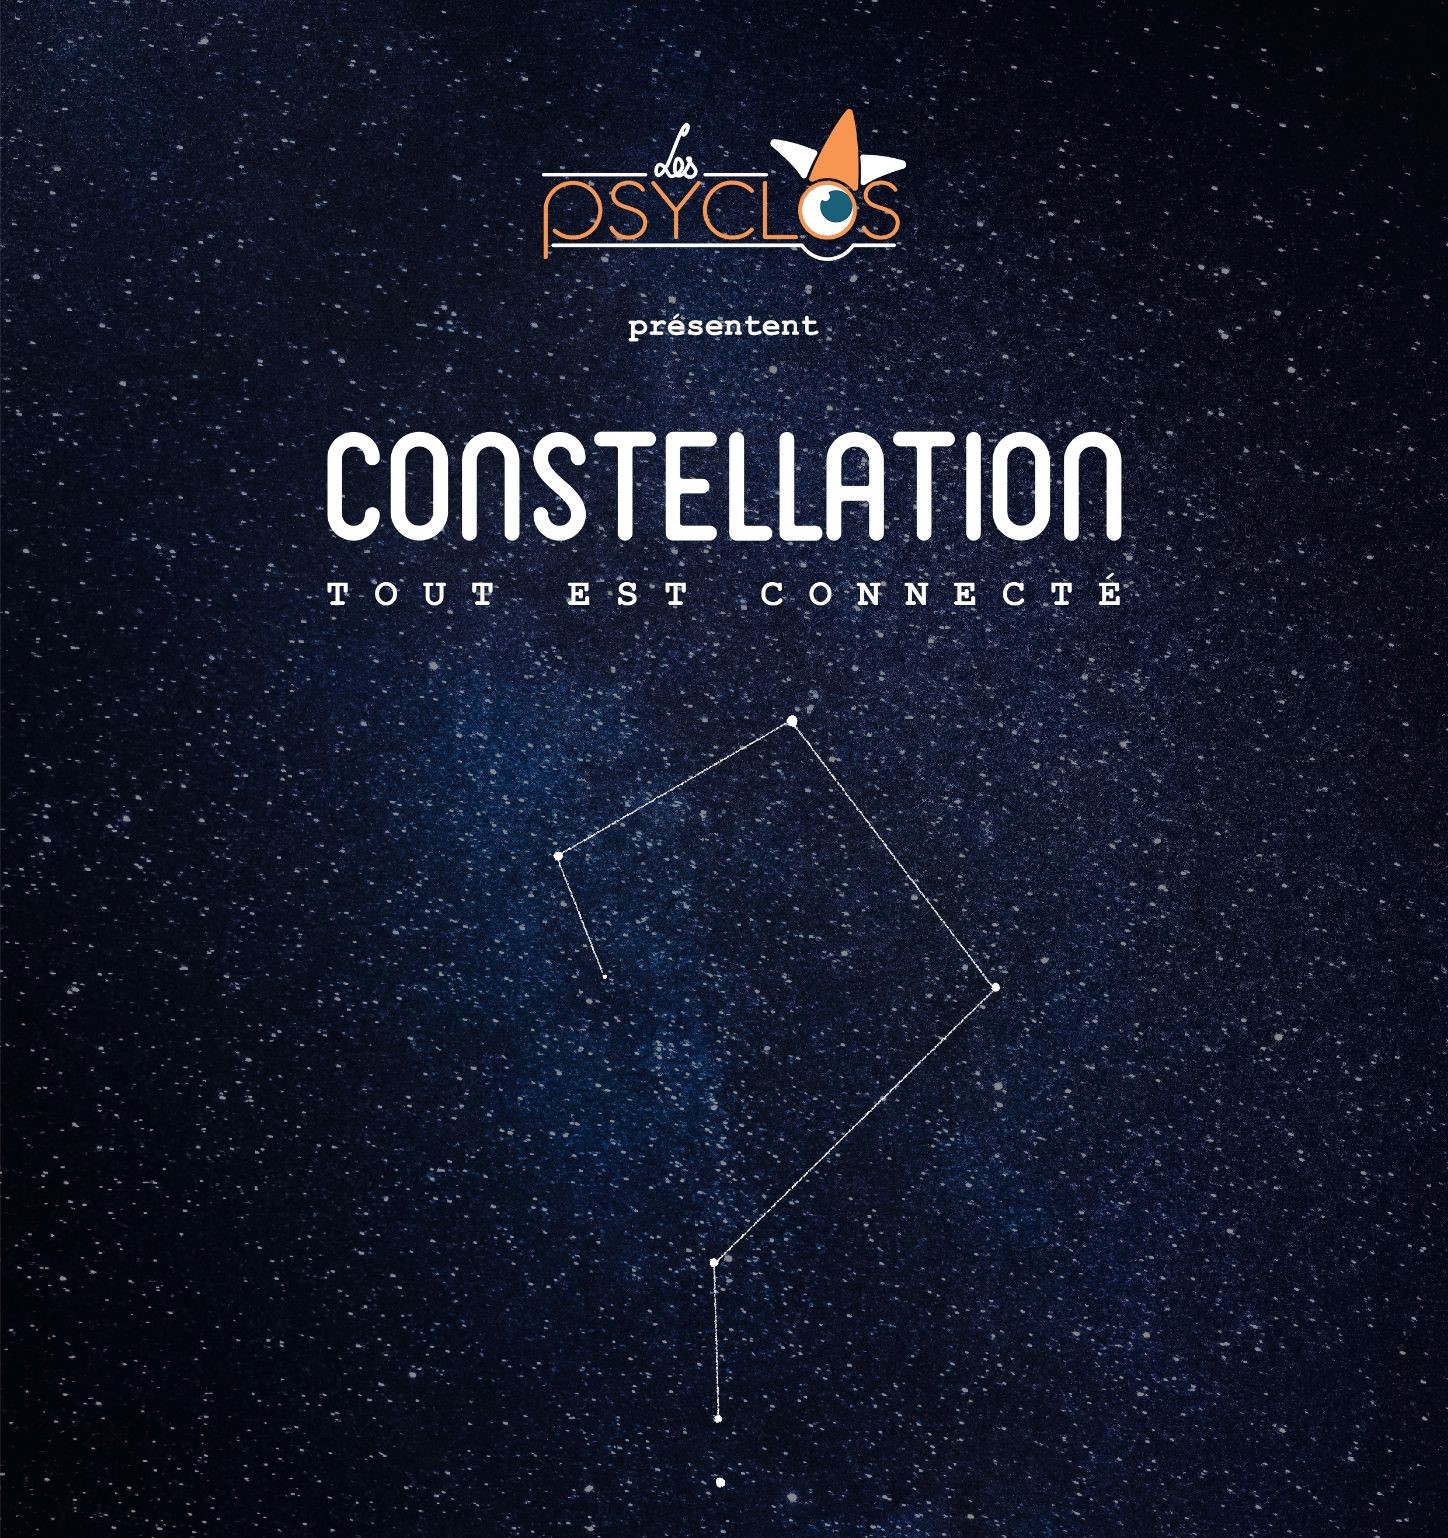 affiche du spectacle improvisé constellation par les psyclos nantes